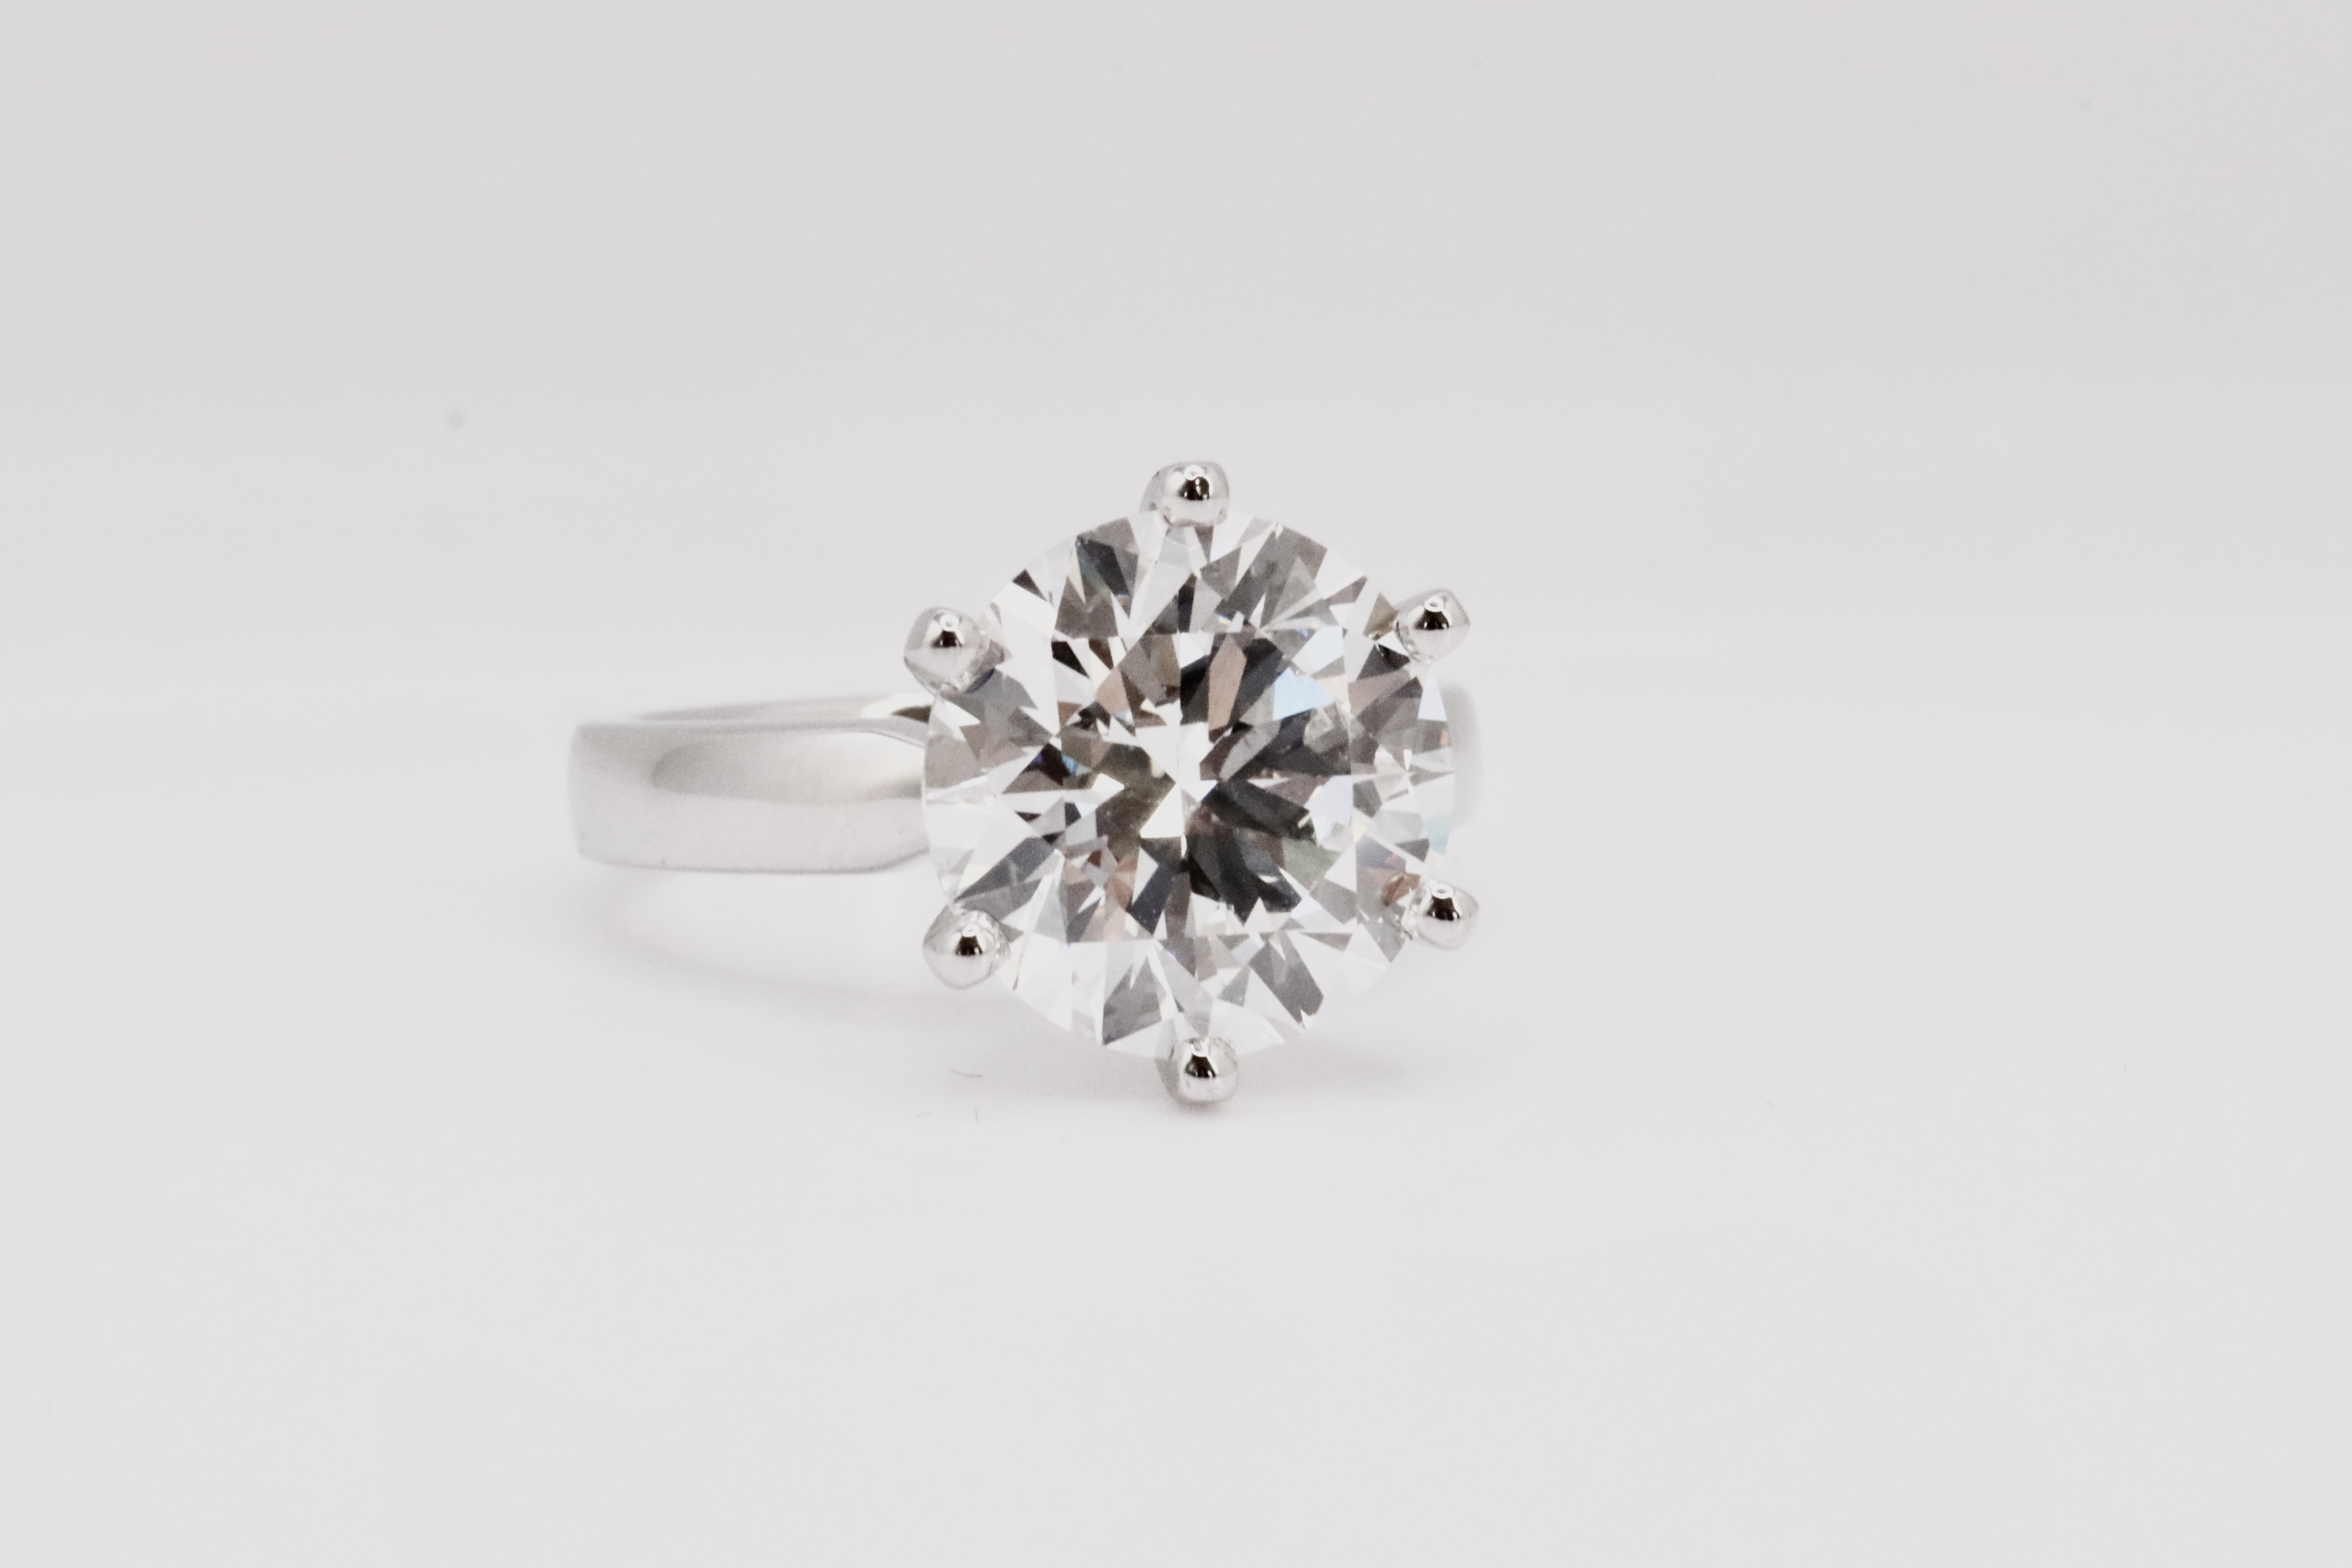 Round Brilliant Cut 5.00 Carat Diamond Ring Set in Platinum - F Colour VVS Clarity - IGI - Image 2 of 6